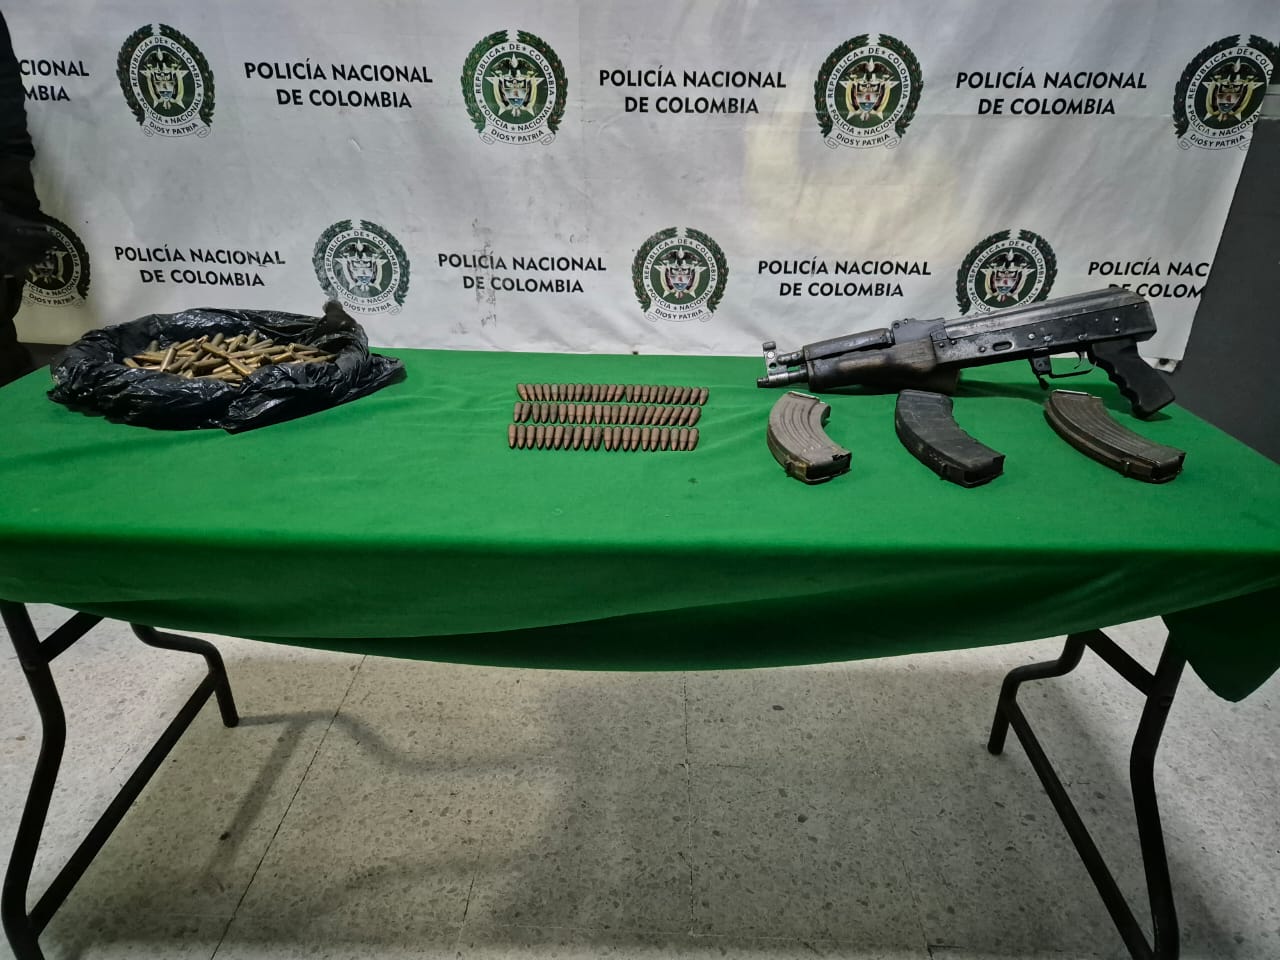 Fusil AK -47, 64 cartuchos 5,56, 157 cartuchos 7,62 y tres proveedores. 